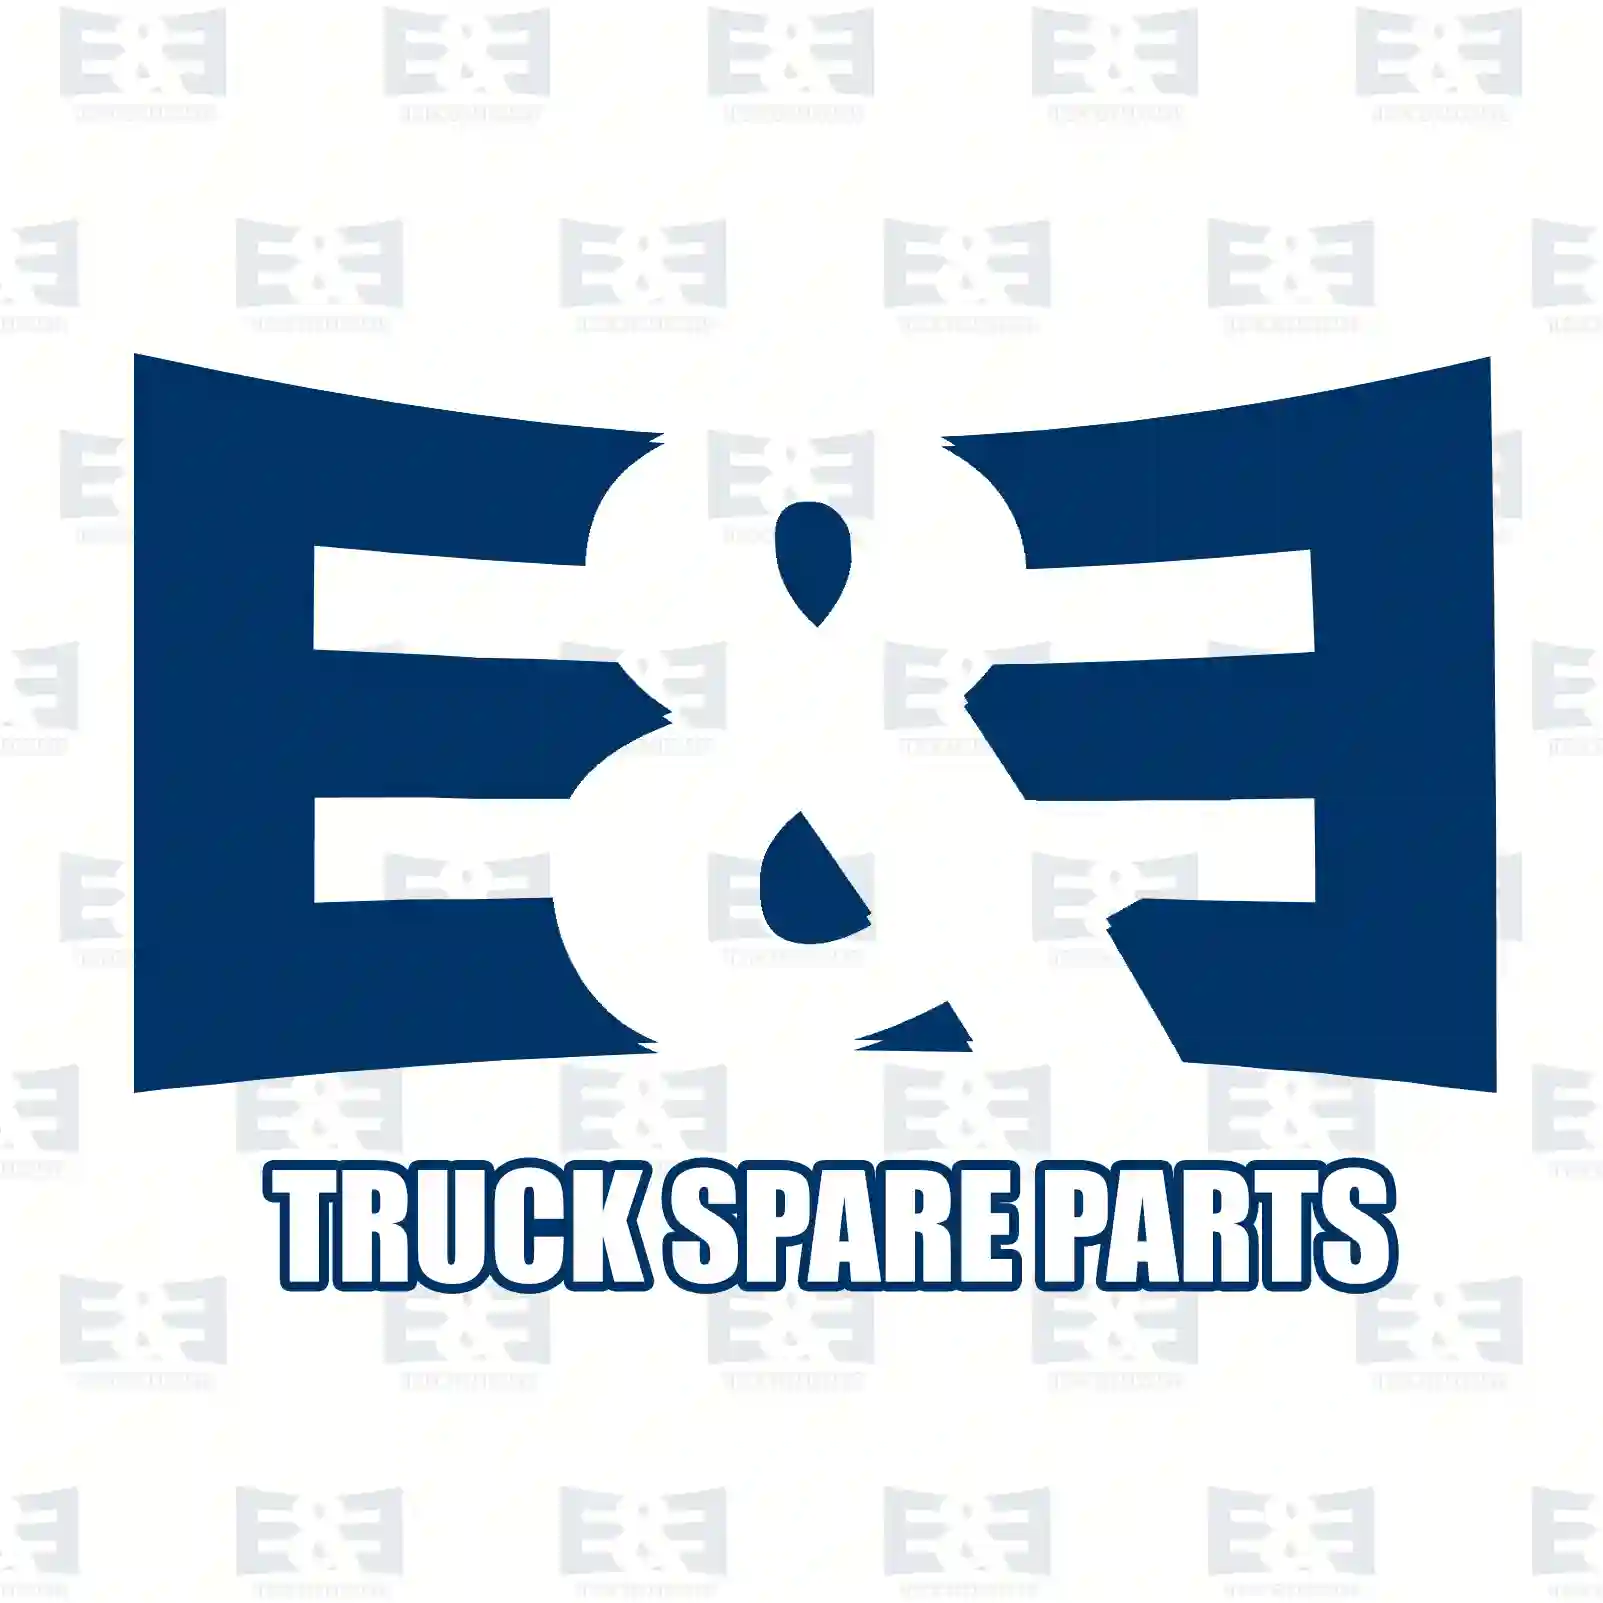 Fan with clutch, 2E2201489, 51066017011 ||  2E2201489 E&E Truck Spare Parts | Truck Spare Parts, Auotomotive Spare Parts Fan with clutch, 2E2201489, 51066017011 ||  2E2201489 E&E Truck Spare Parts | Truck Spare Parts, Auotomotive Spare Parts